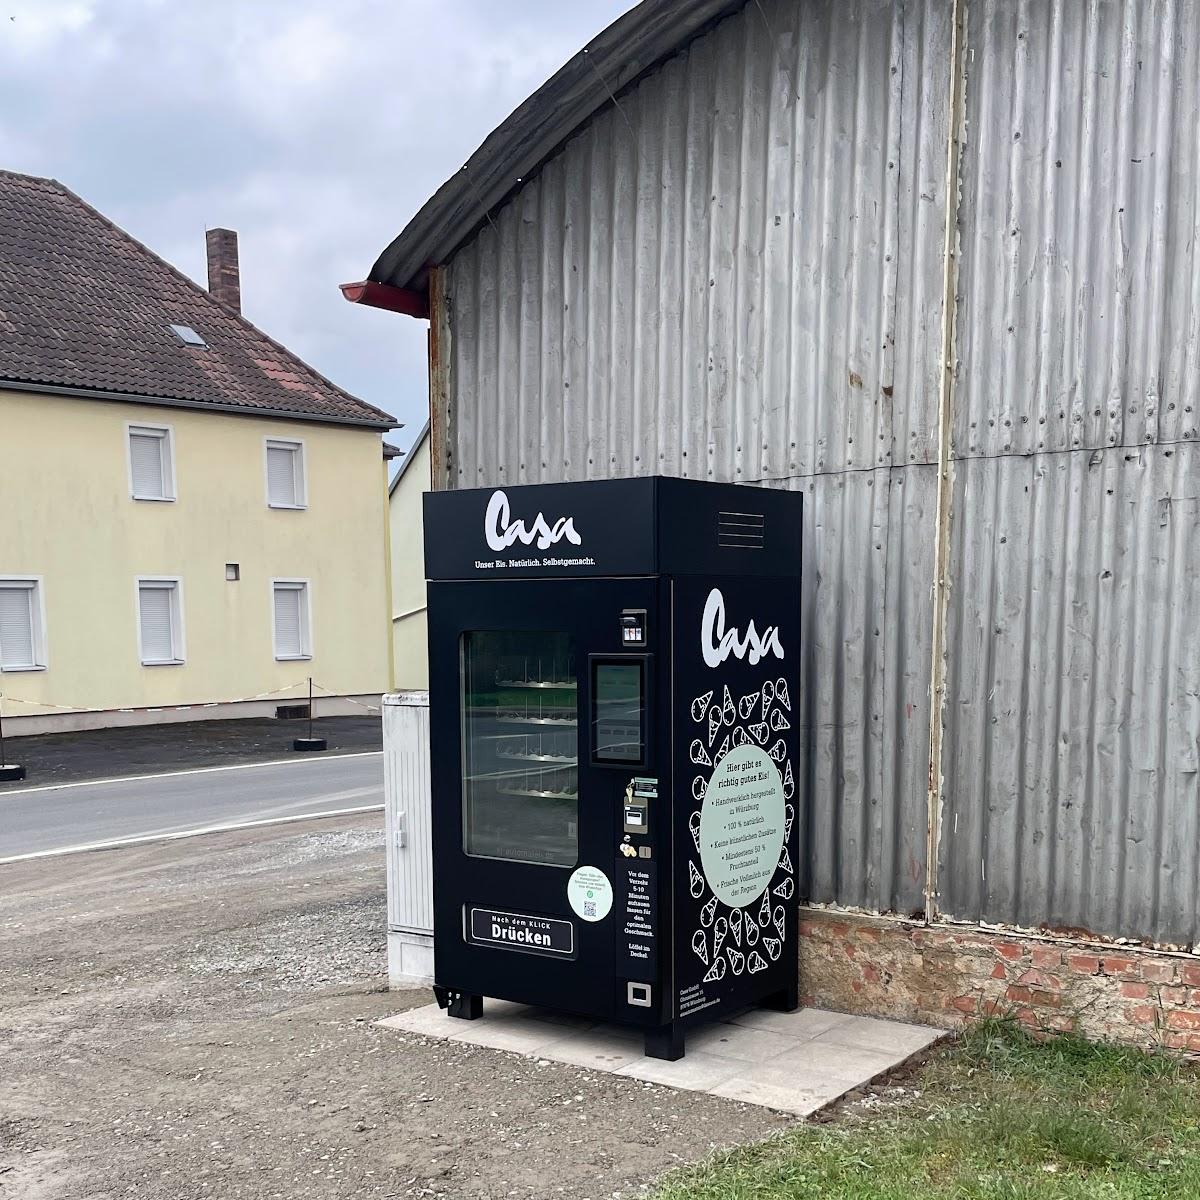 Restaurant "Das Casa Eisautomat" in Sonderhofen